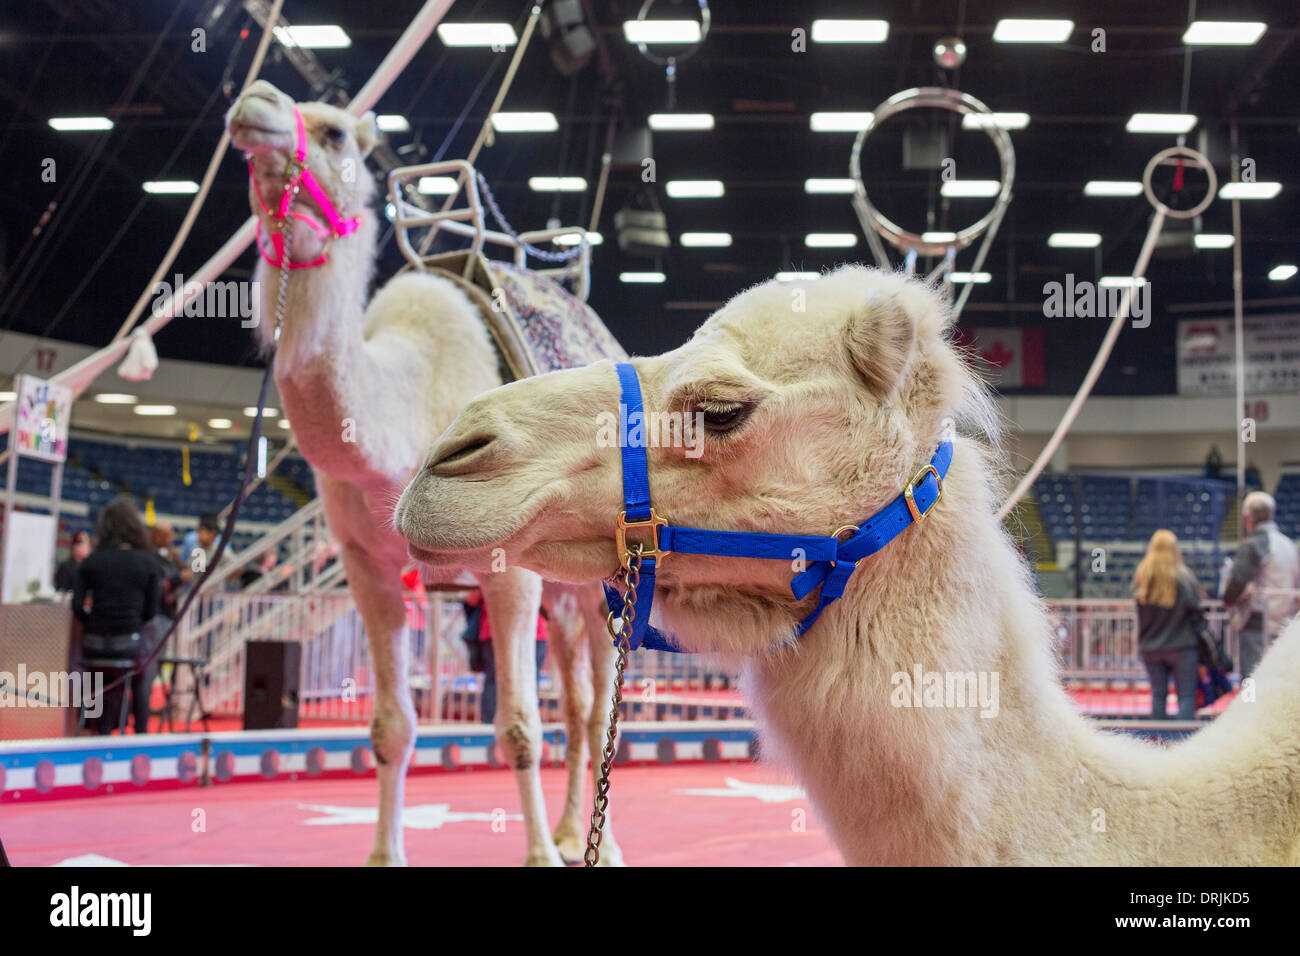 Flint, Michigan - chameaux avant un spectacle de cirque du sanctuaire. Banque D'Images